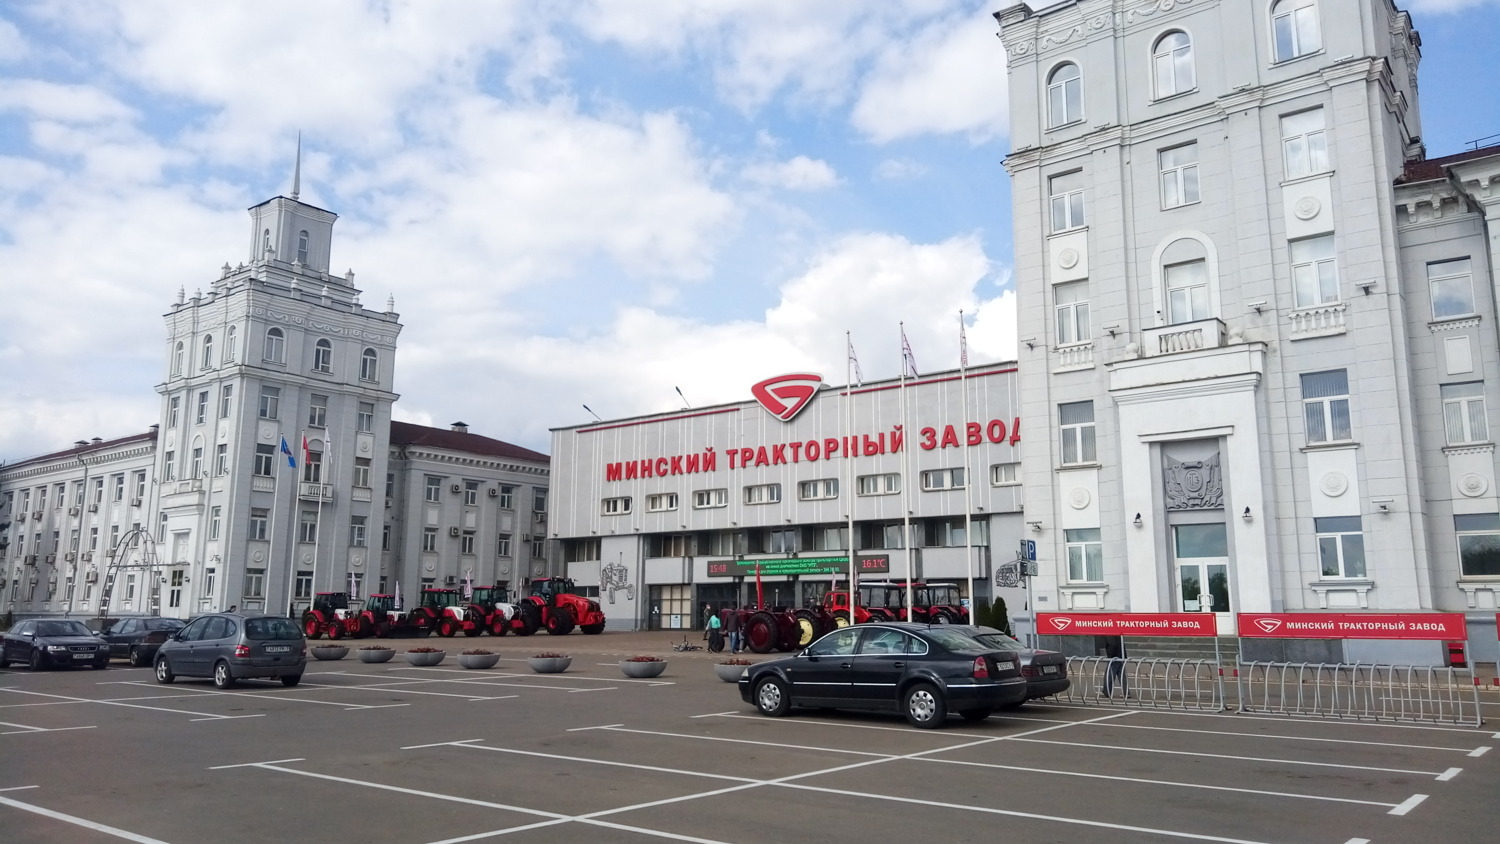 Топ-7 экскурсий на белорусские заводы, которые понравится и детям, и взрослым